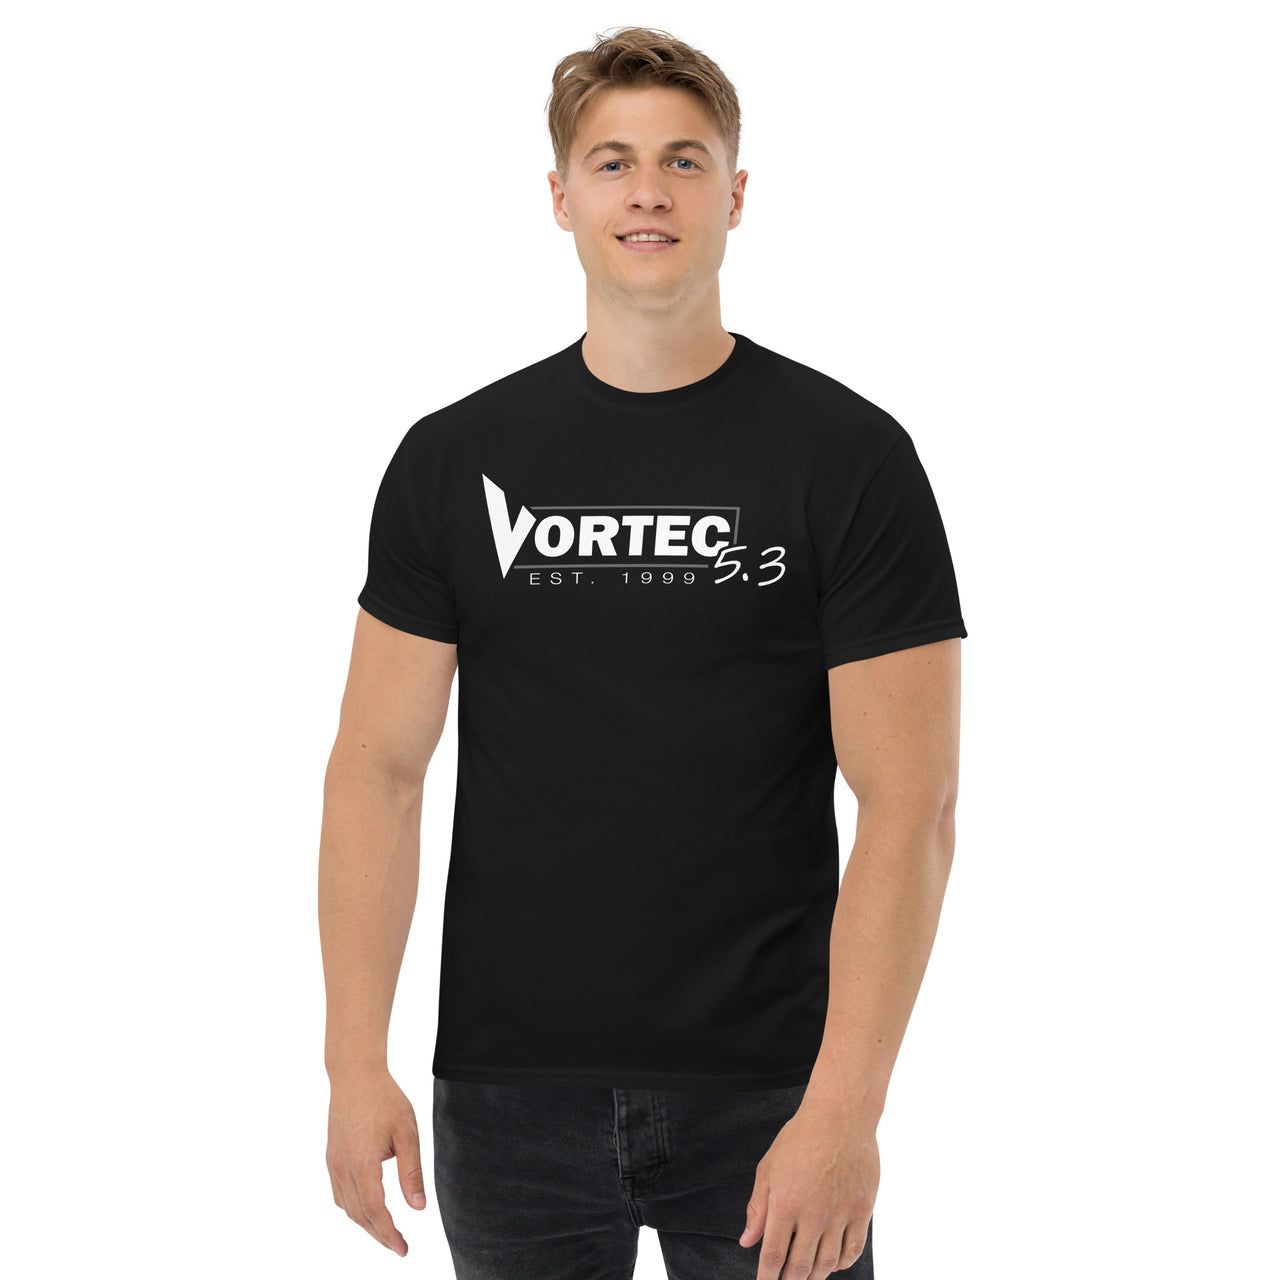 Vortec 5.3 LS V8 T-Shirt modeled in black